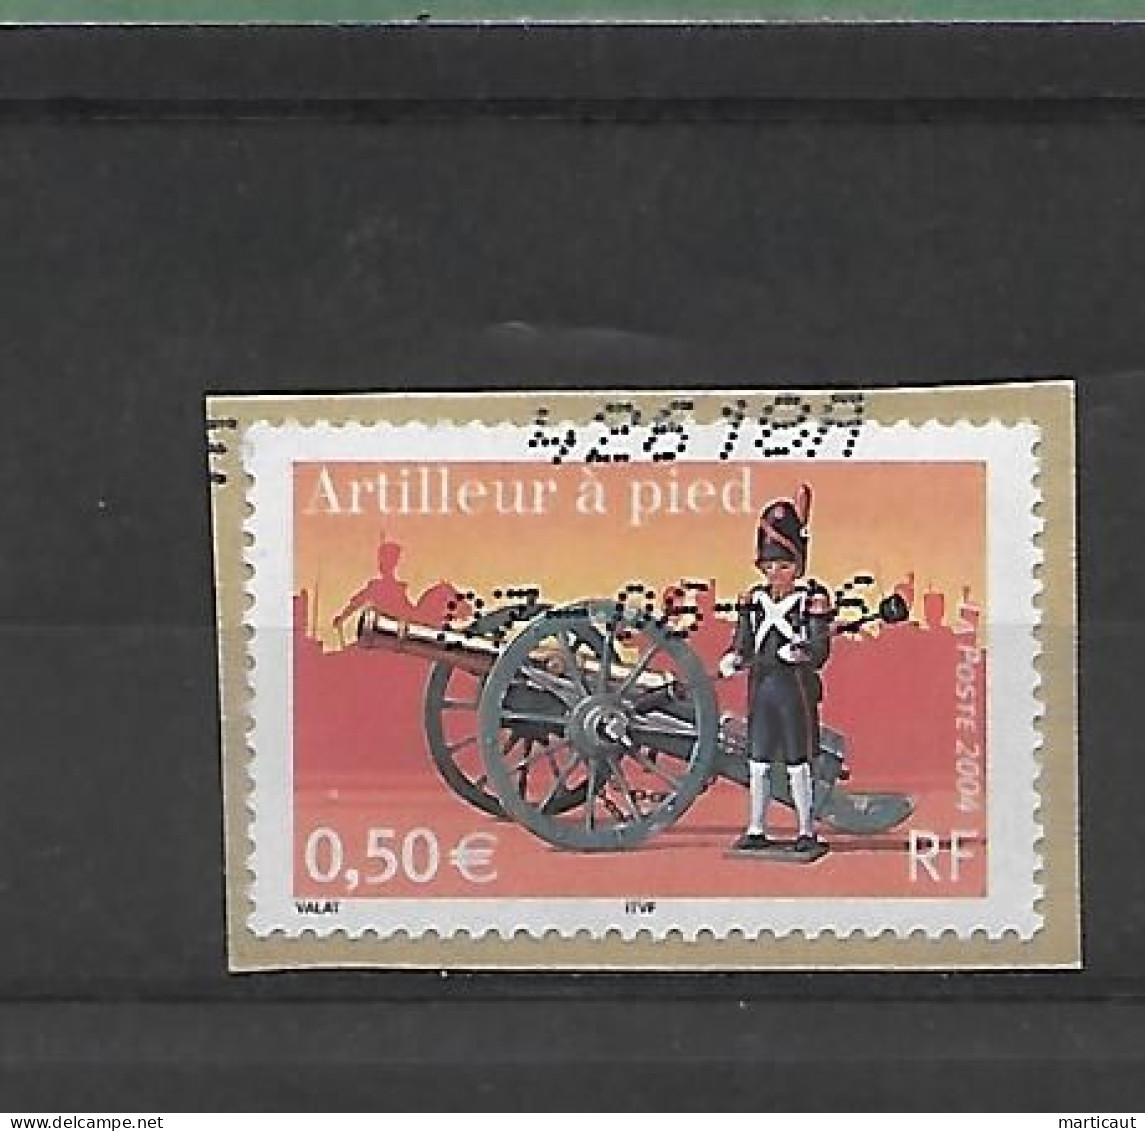 Petit lot de timbres oblitérés vendus en l'état